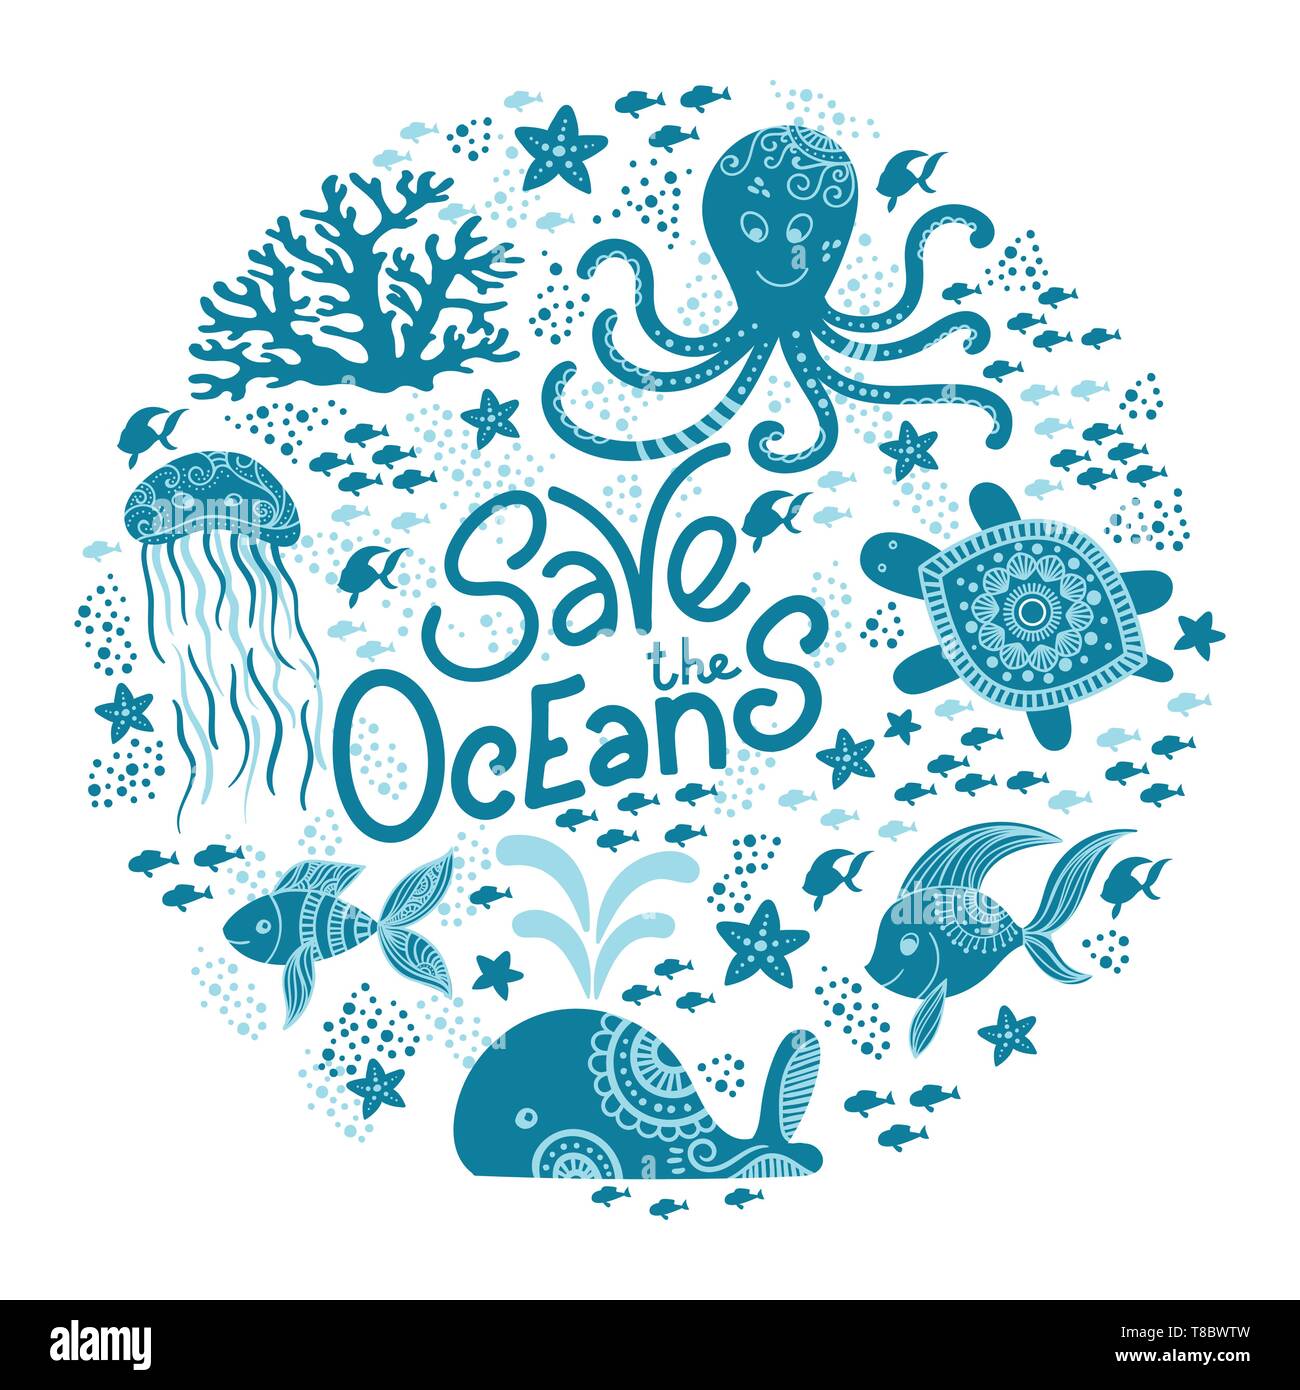 Speichern Sie die ocean Hand gezeichnet Schriftzug und Unterwasser Tiere. Quallen, Wale, Octopus, Seesterne und Schildkröten. Vector Illustration in doodle Stil. Ozean Konzept Schützen Stock Vektor